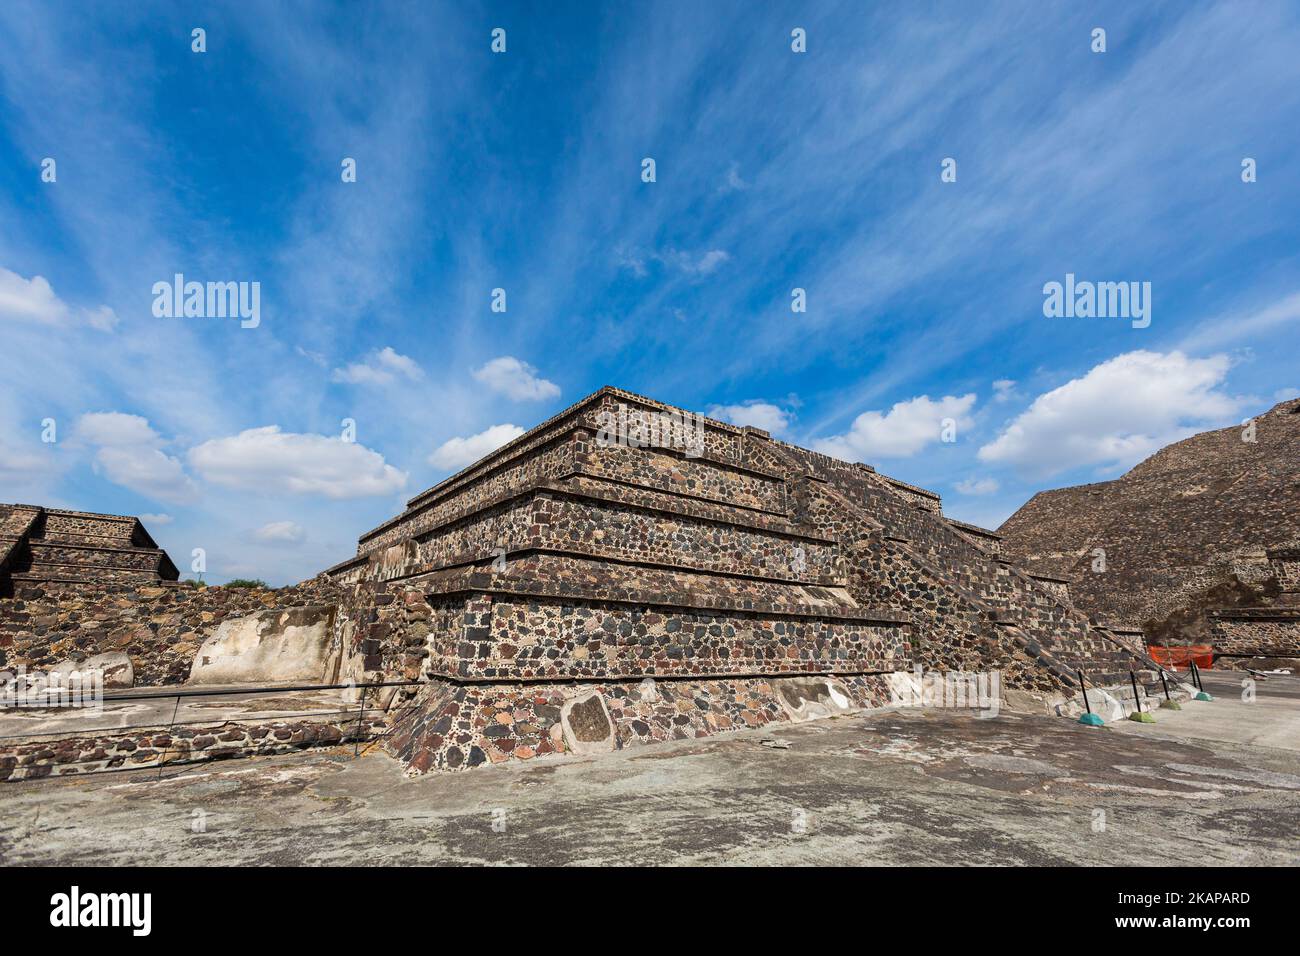 Bella architettura delle piramidi di Teotihuacan in Messico. Paesaggio con bel cielo blu. Foto Stock